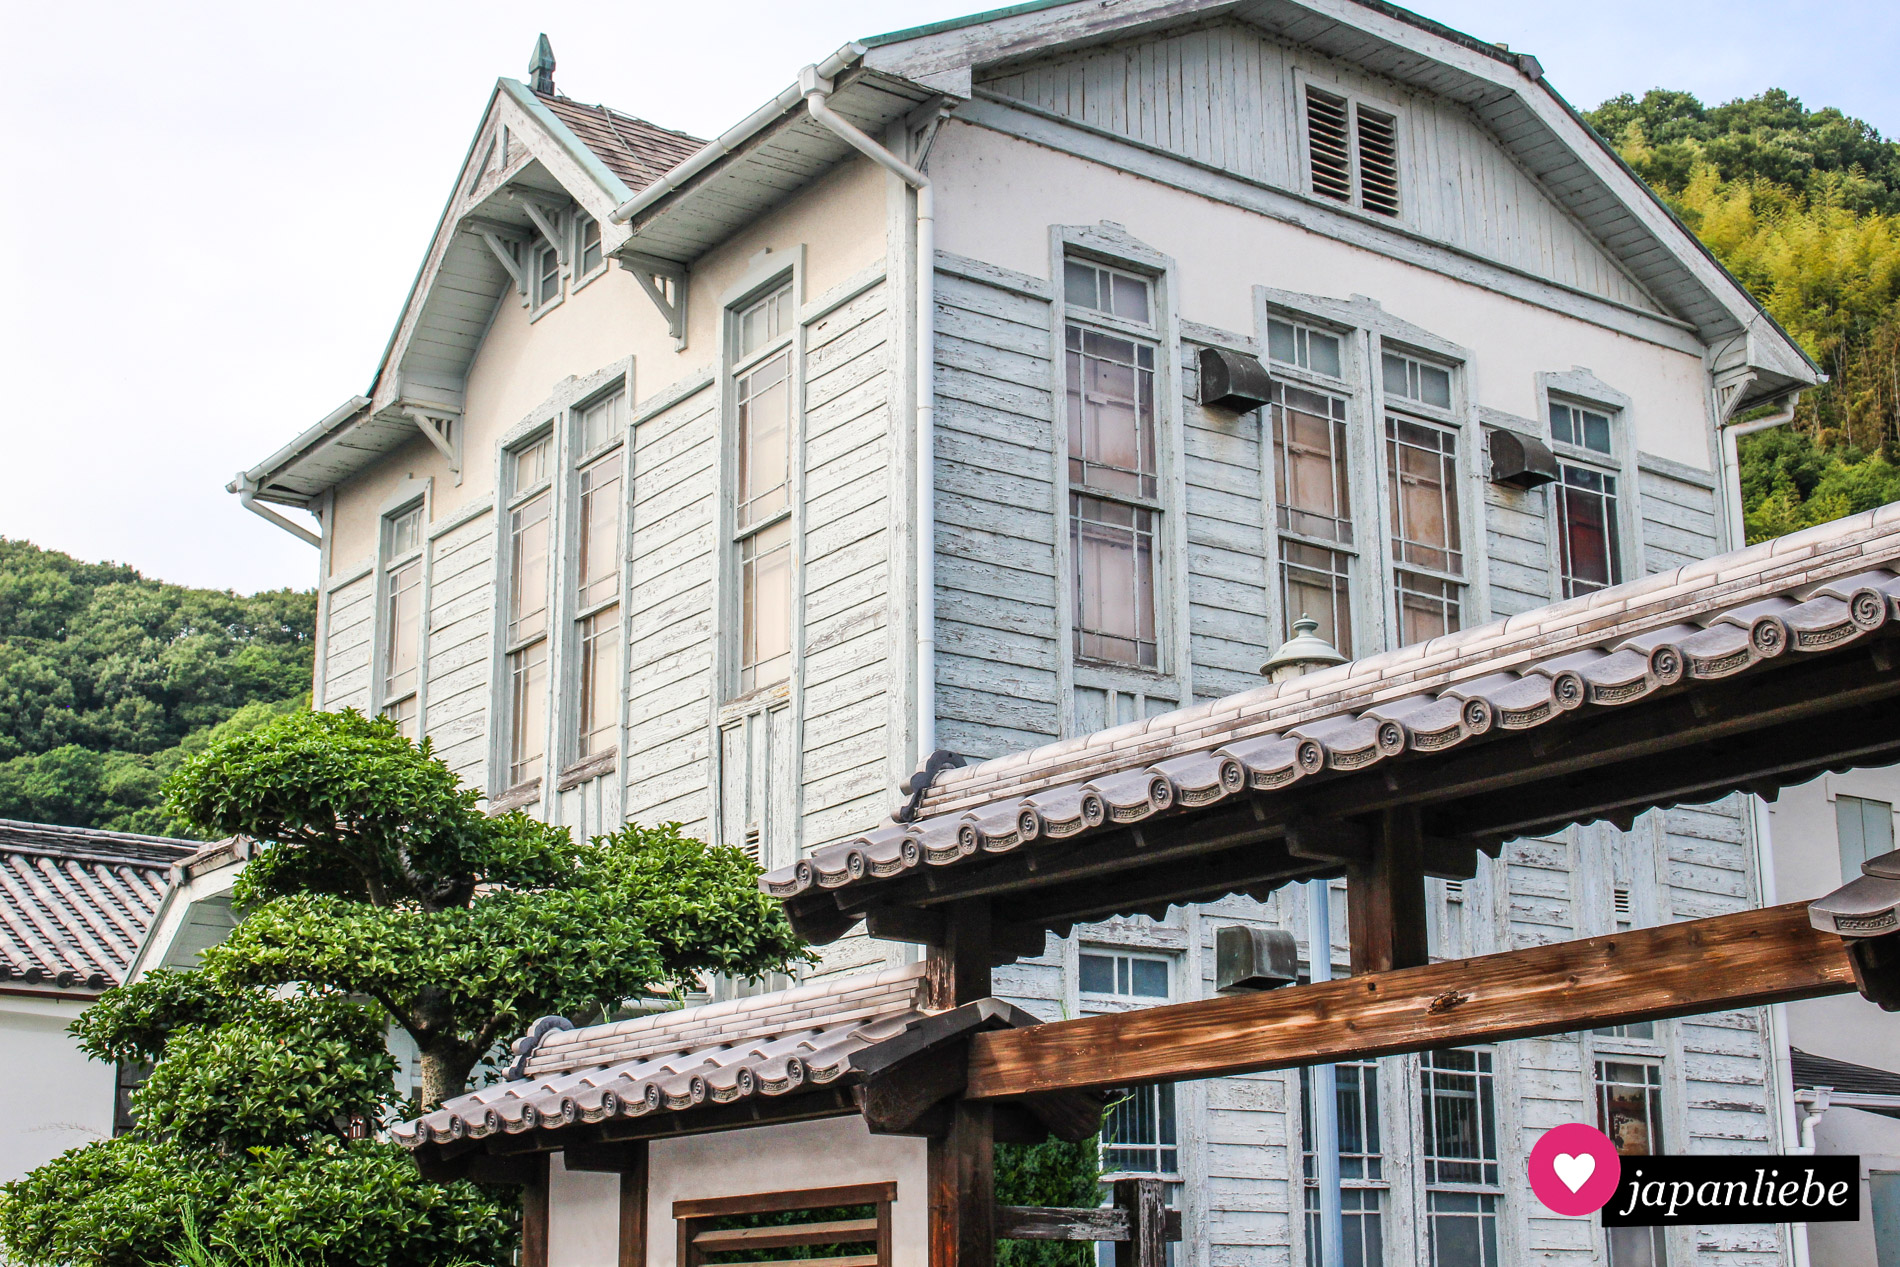 Das Museum für Lokalgeschichte sticht durch seine westliche Architektur inmitten der traditionell japanischen Häuser sofort ins Auge.